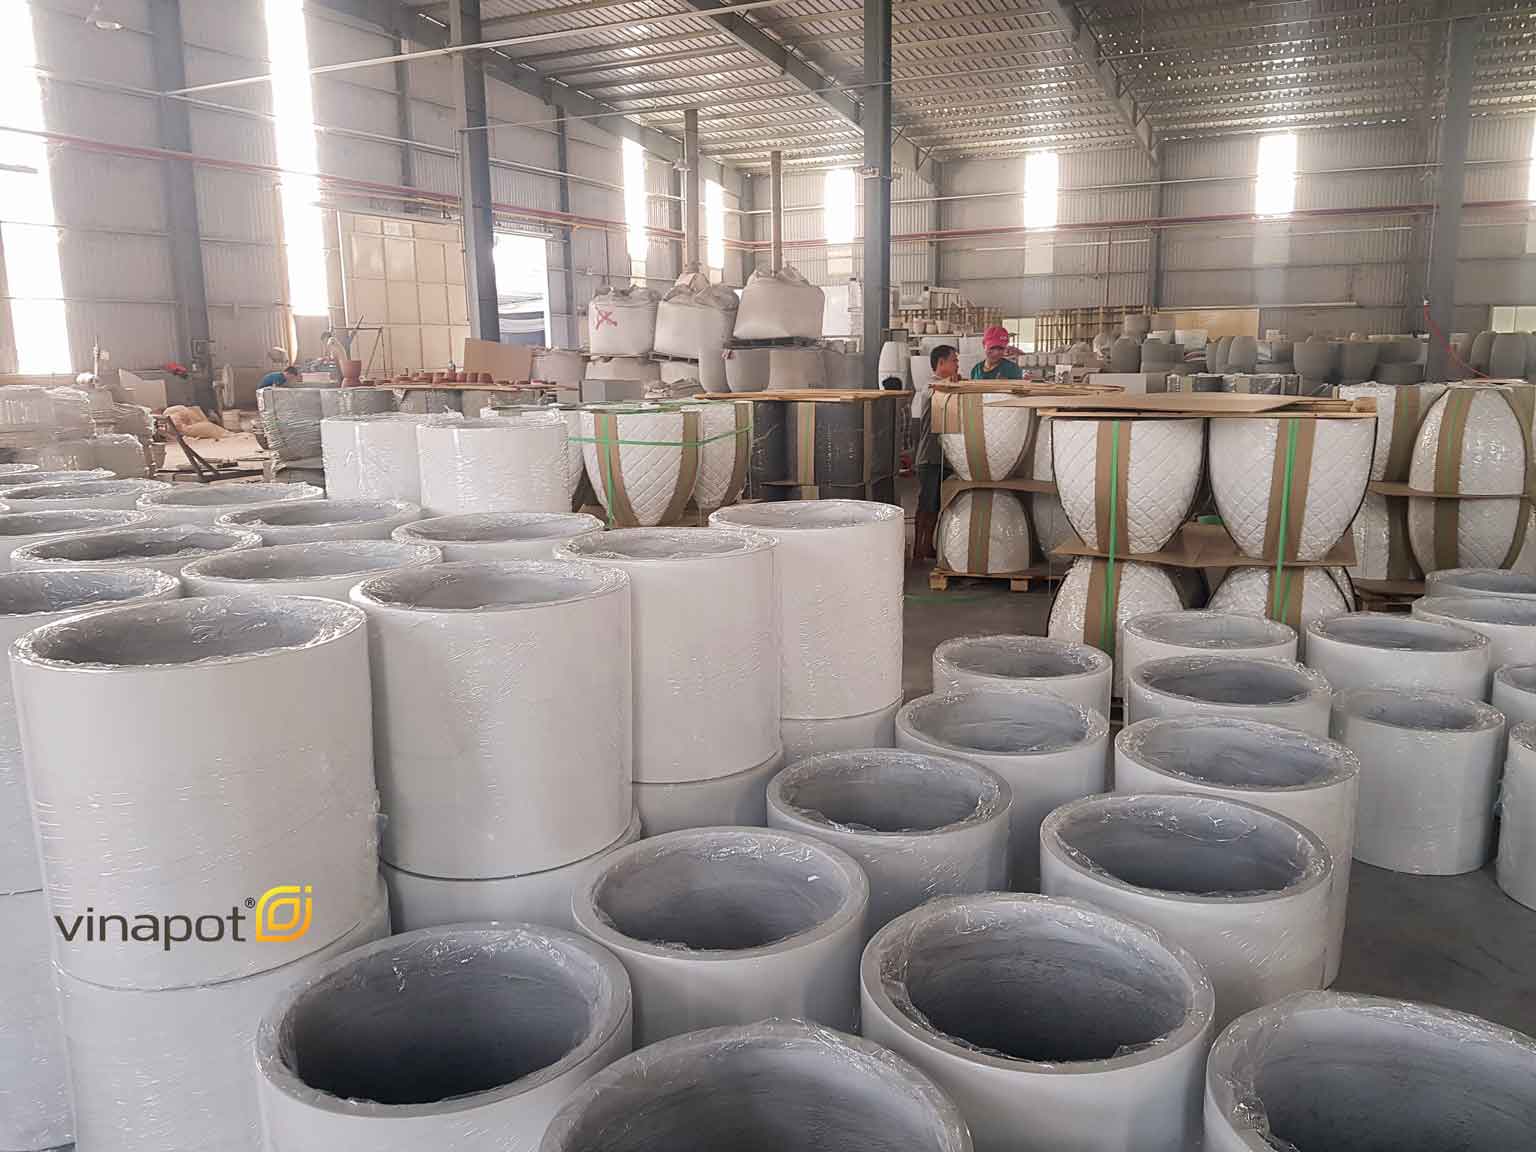 Xưởng sản xuất chậu bê tông cốt sợi thủy tinh của Vinapot